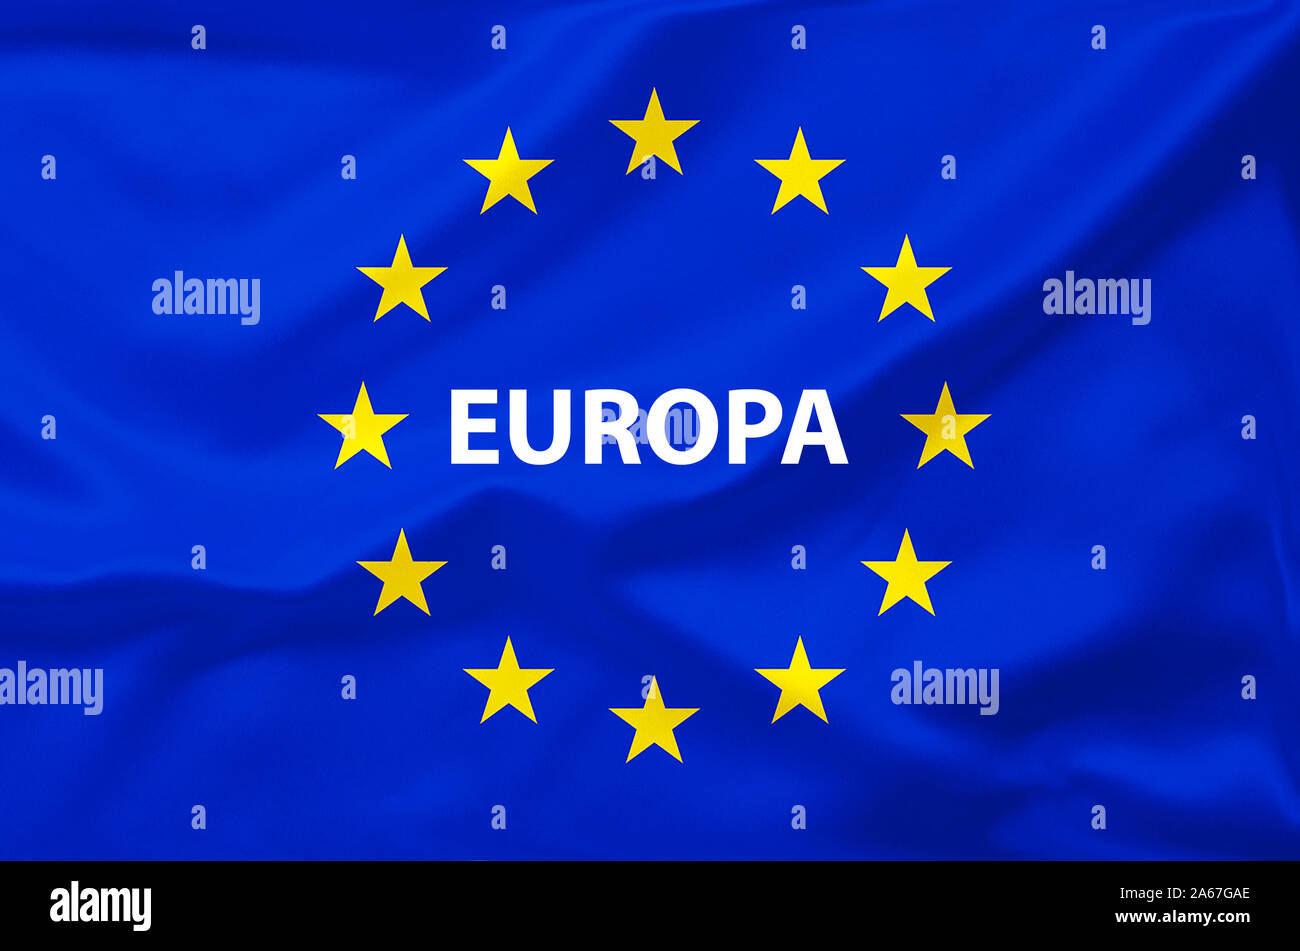 Brexit, Euroflagge, Flagge, Vereinigtes Koenigreich, UK, Grossbritannien, Eurostars, Stock Photo